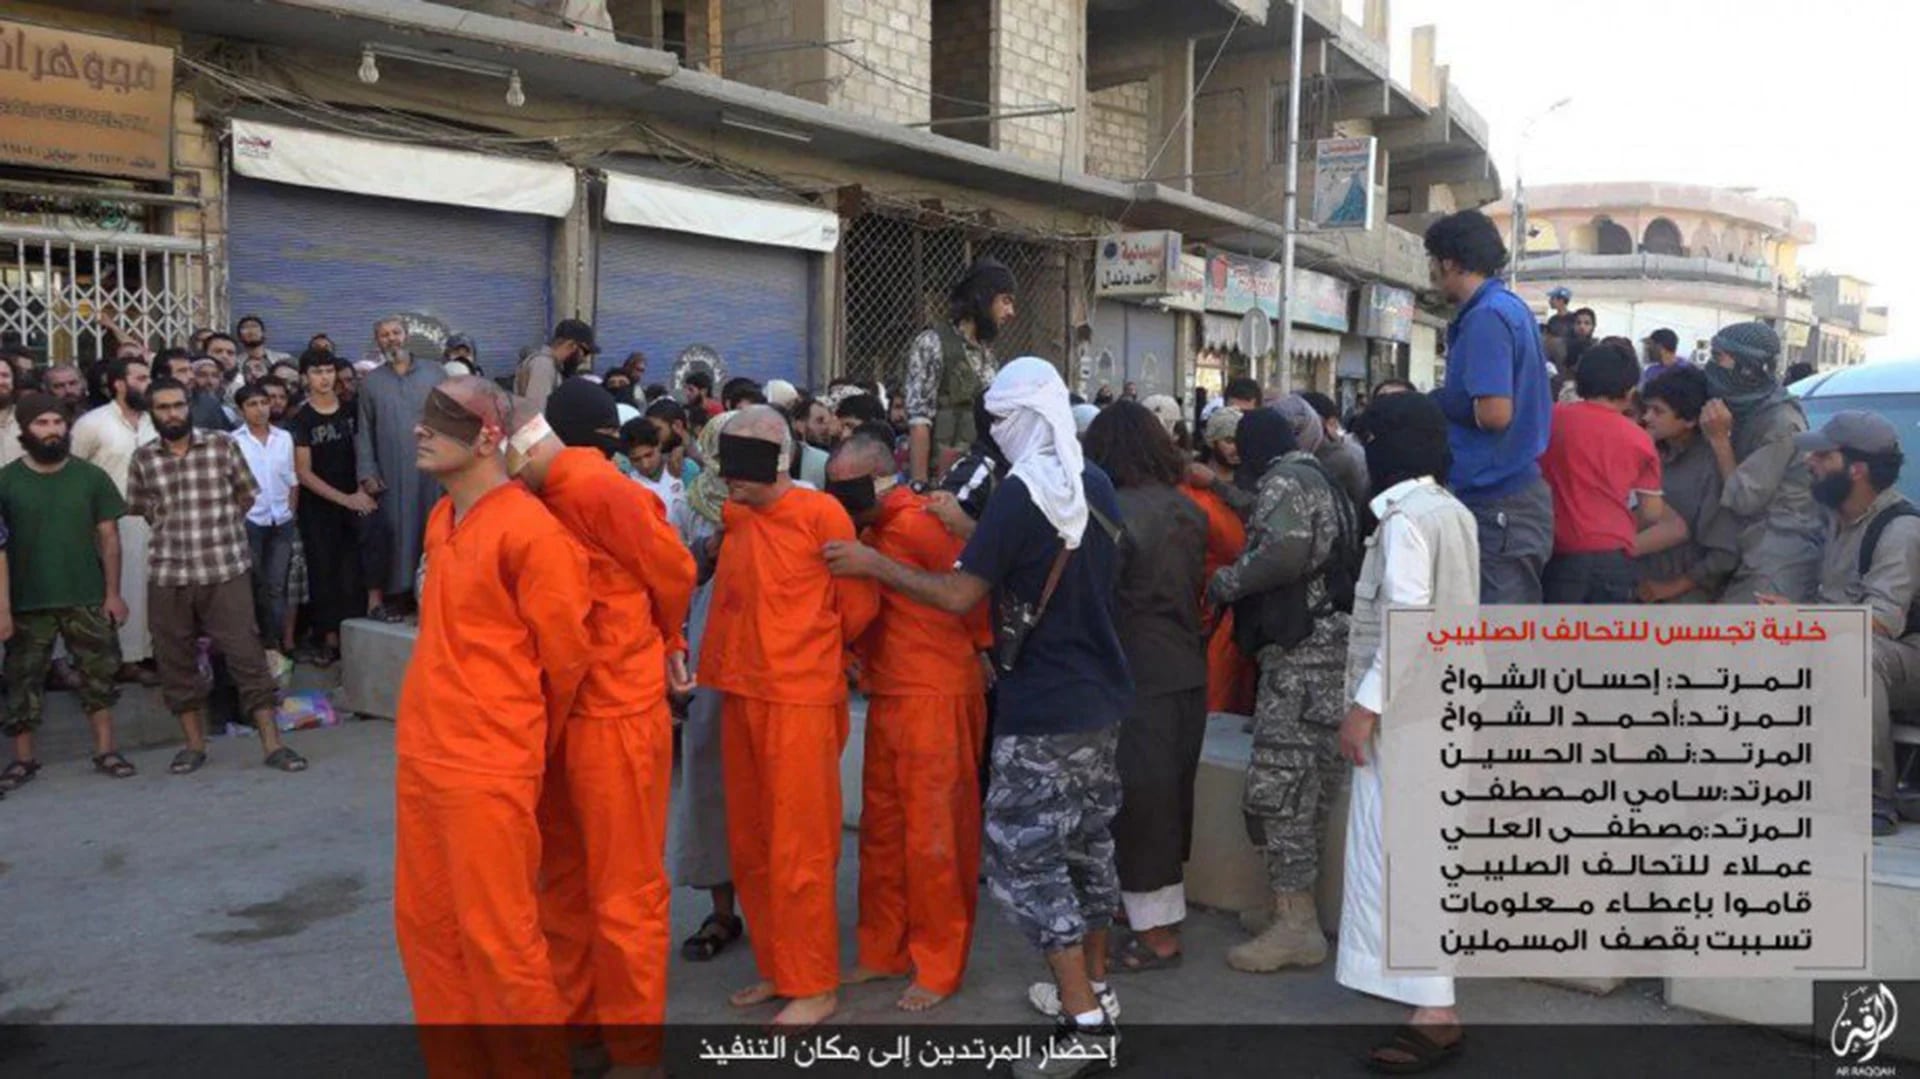 Miembros de un equipo de fútbol son llevados para ser ejecutados por ISIS en Irak